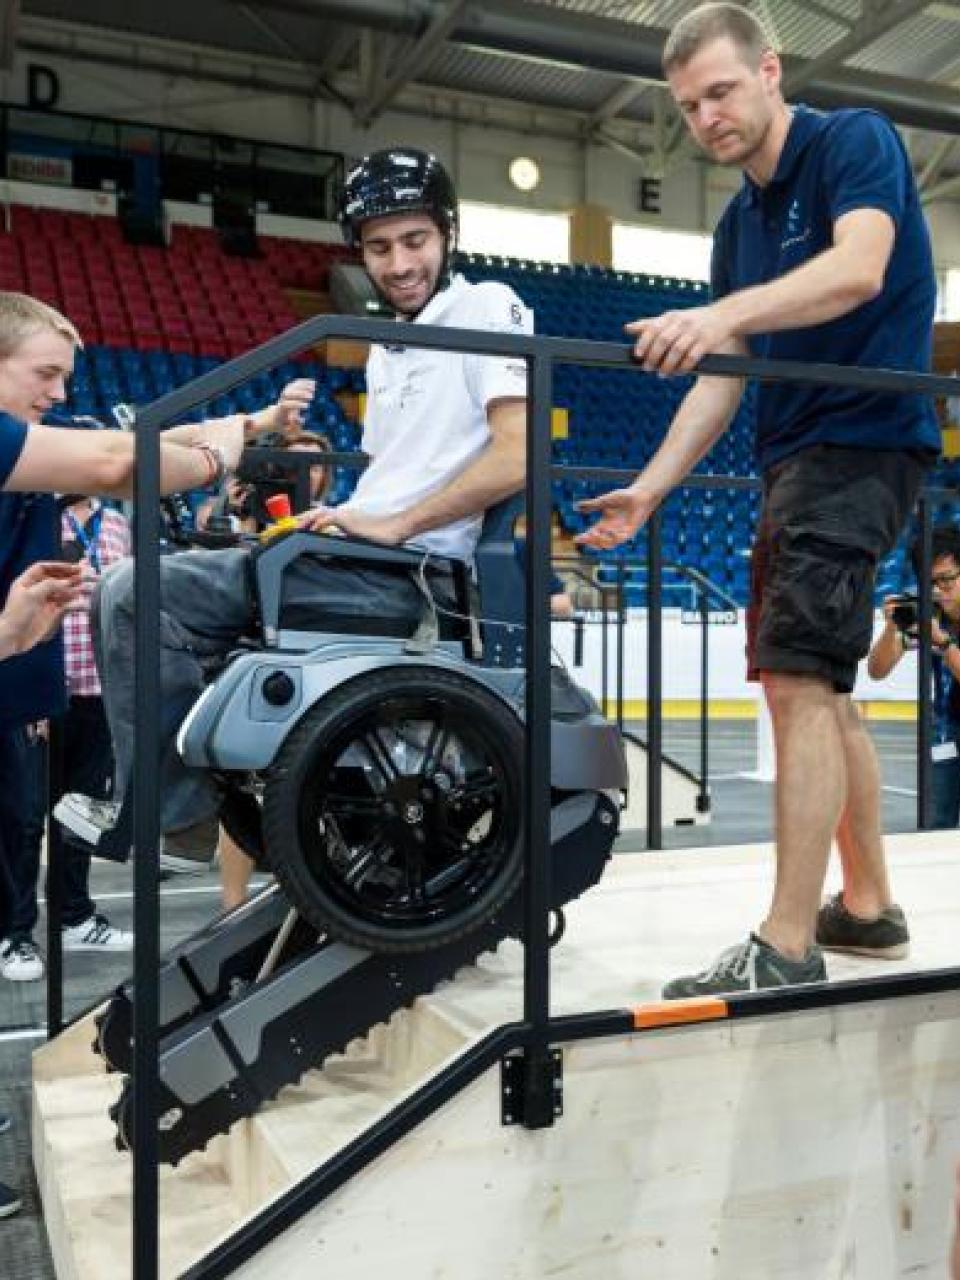 Powered wheelchair race ©EPF Zurich/Alessandro Della Bella